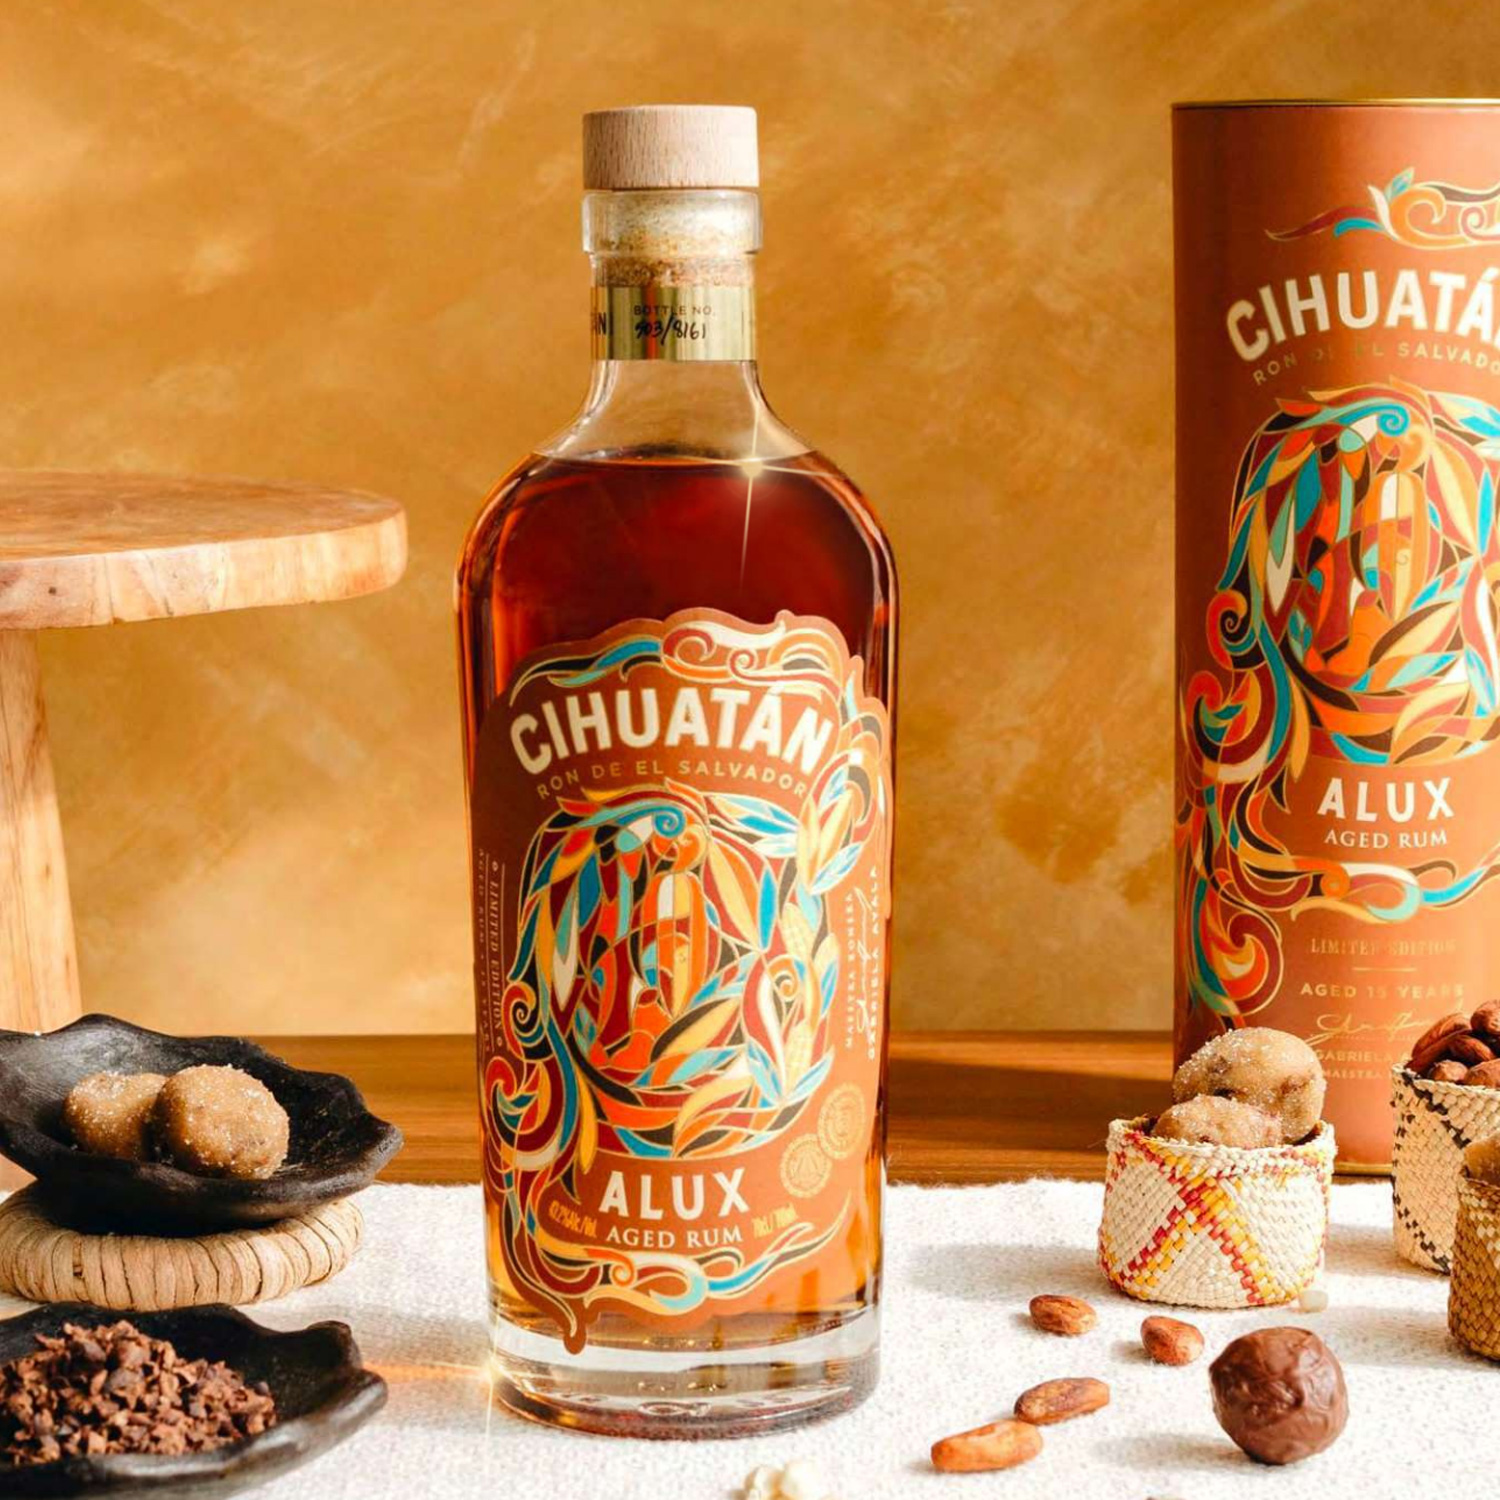 Cihuatan Alux Rum El Salvador 15YO Limited Edition 2022